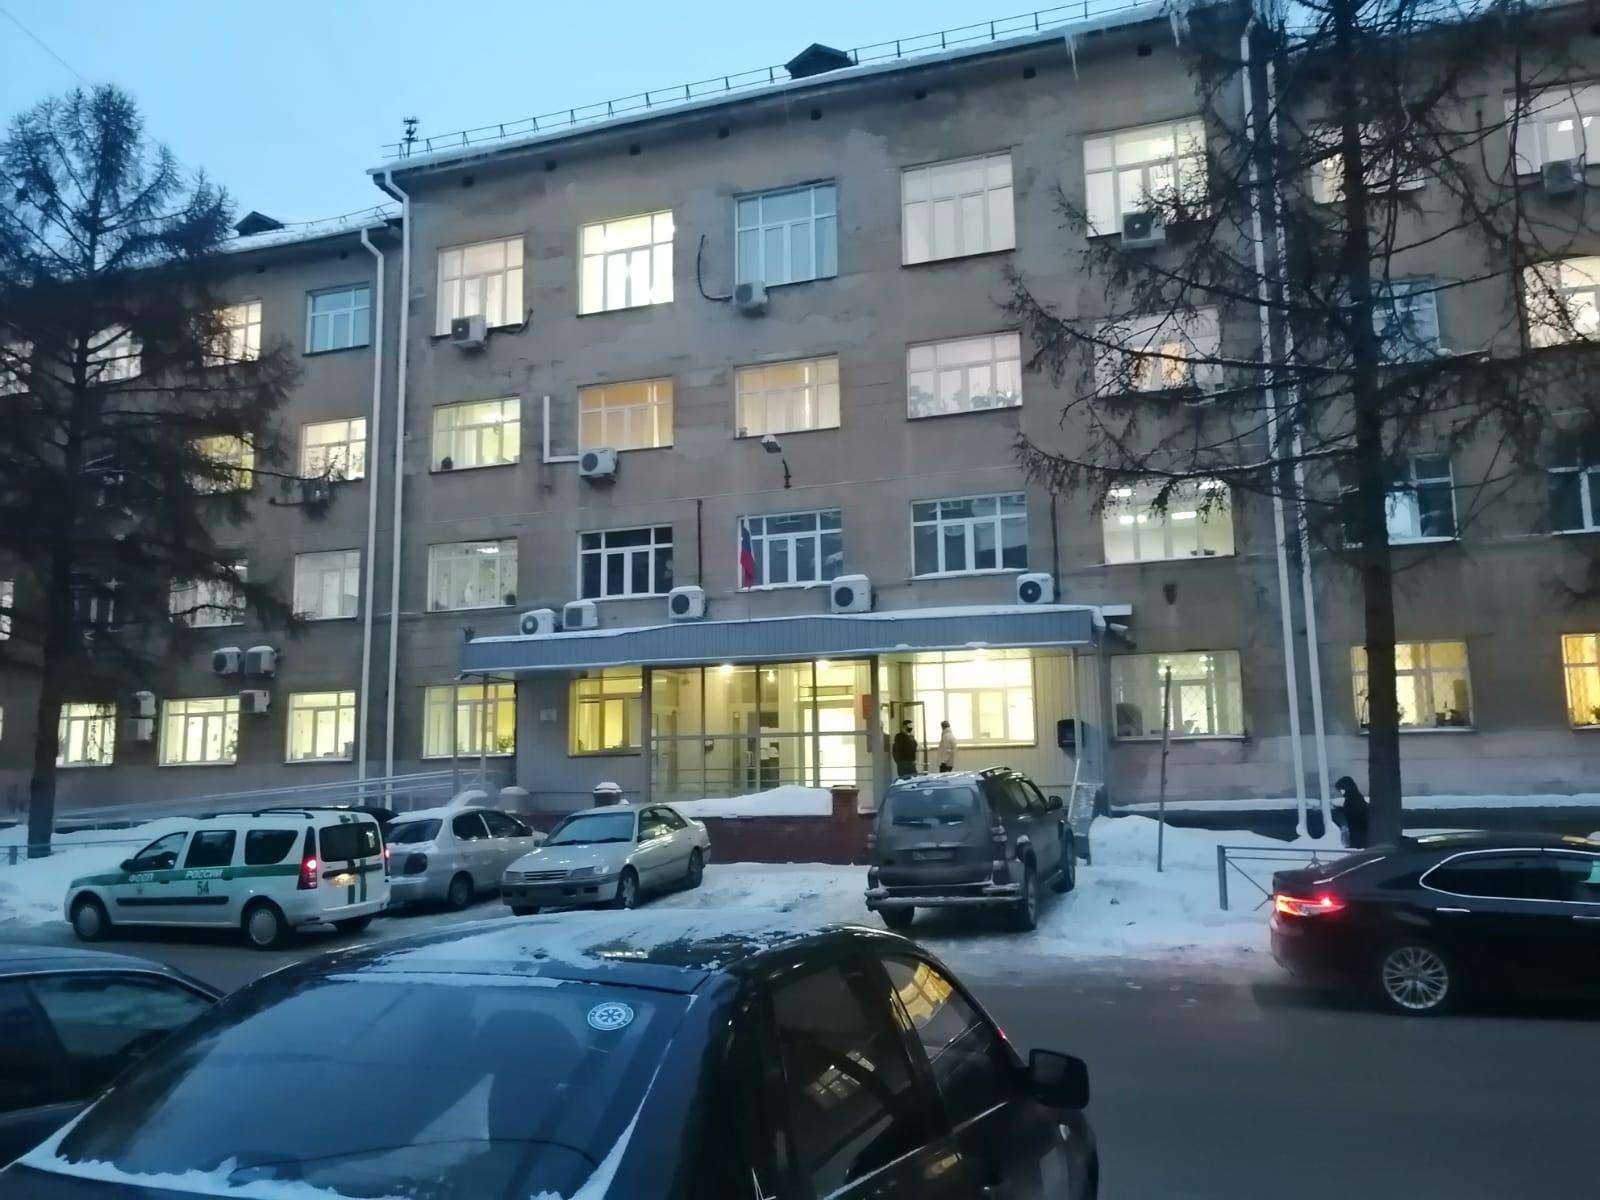 Сообщения о минировании поступили в прокуратуру, суд и налоговую  в Бердске